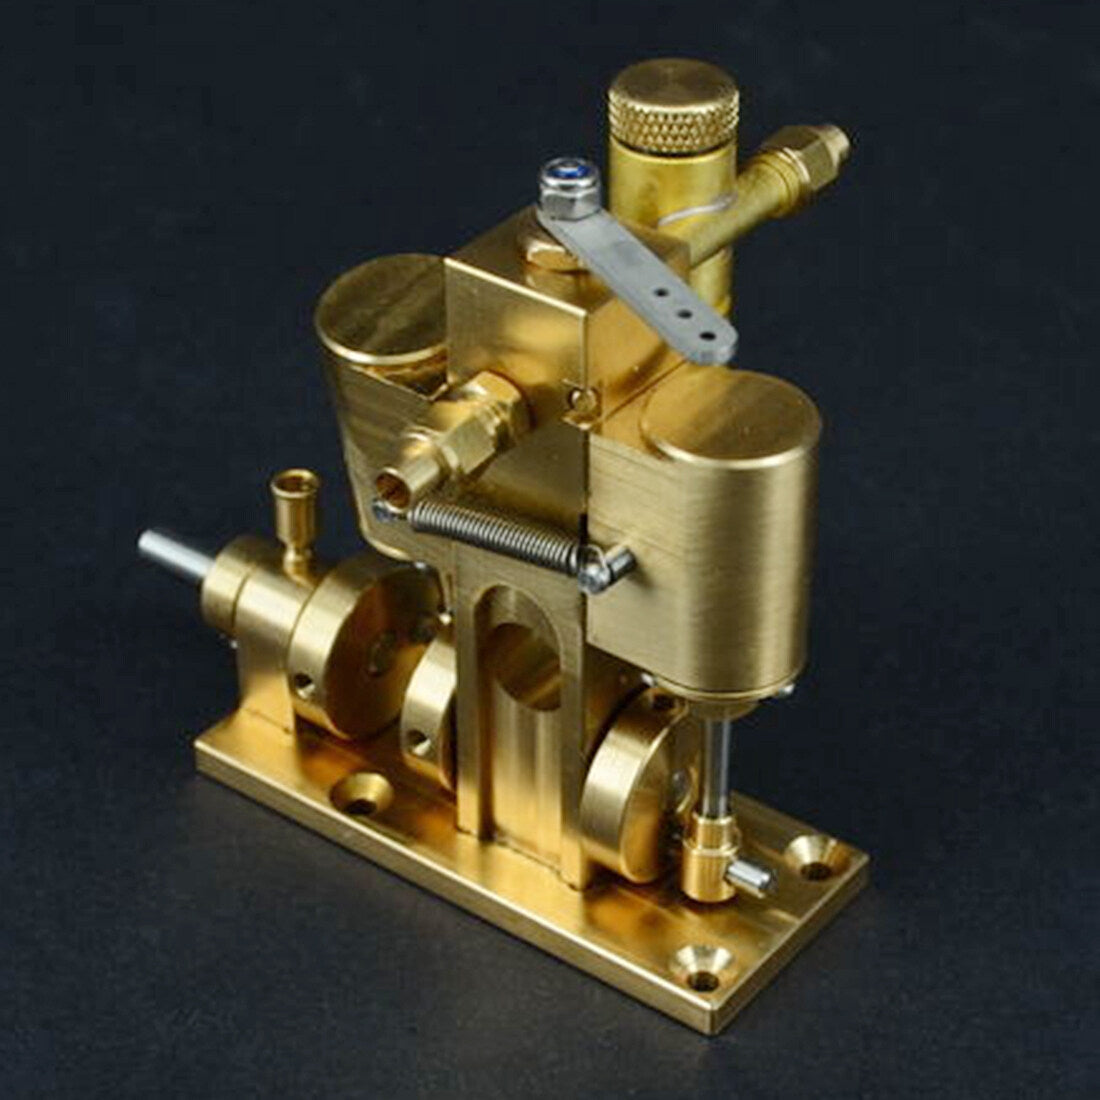 Miniatur-Dampfmaschinenmodell aus reinem Kupfer ohne Kessel, kreatives Geschenkset, Spielzeugmodell einer Dampfmaschine.